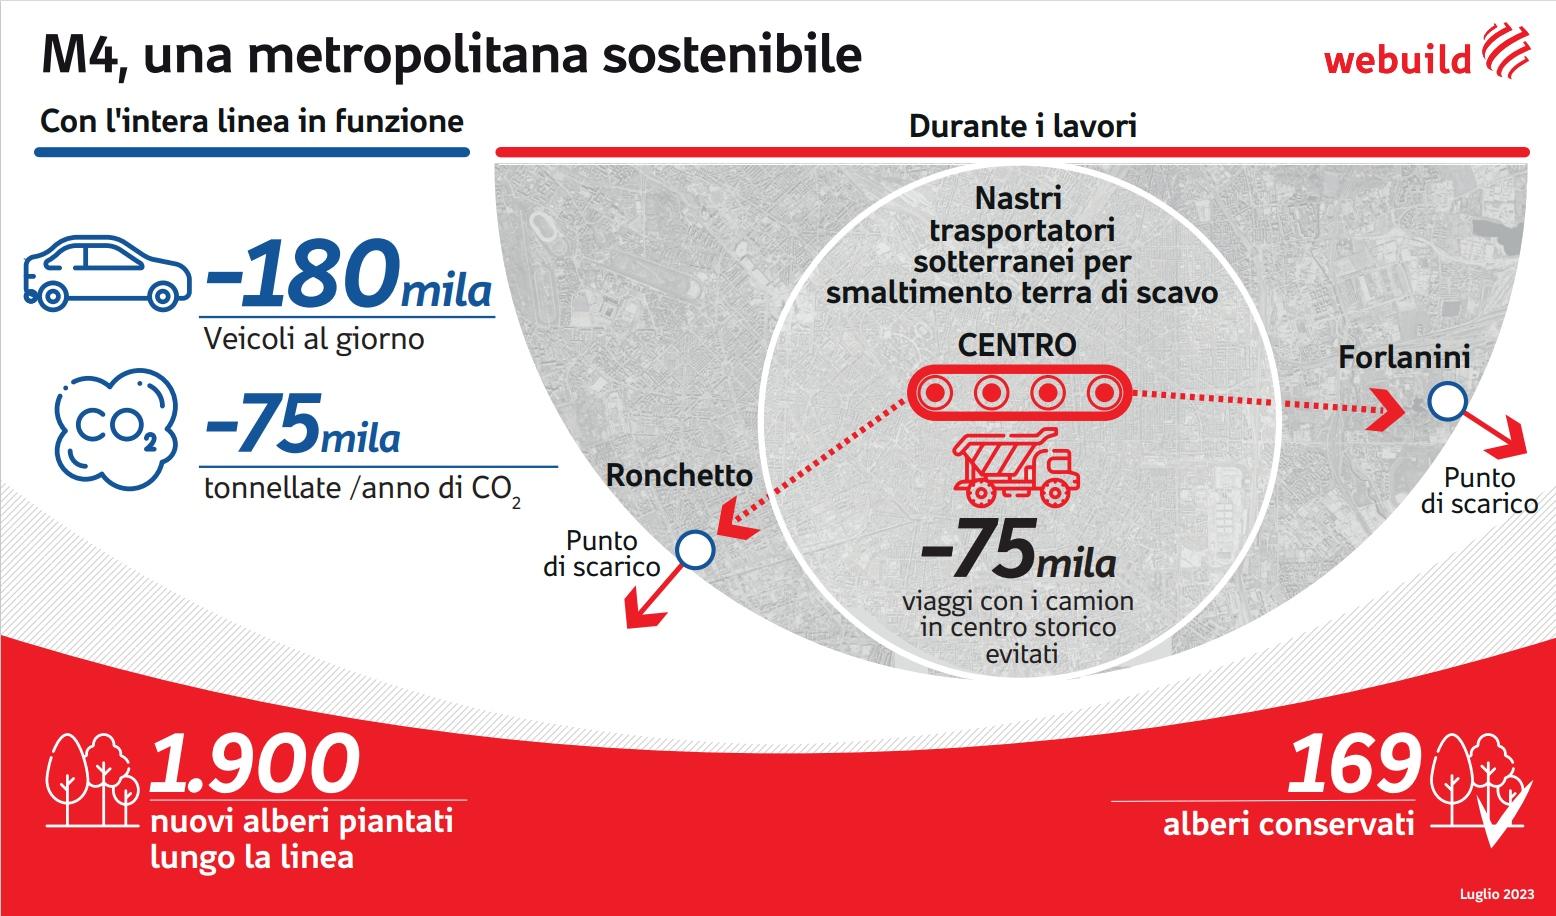 Metro M4 Milano, infografica sostenibilità - Webuild